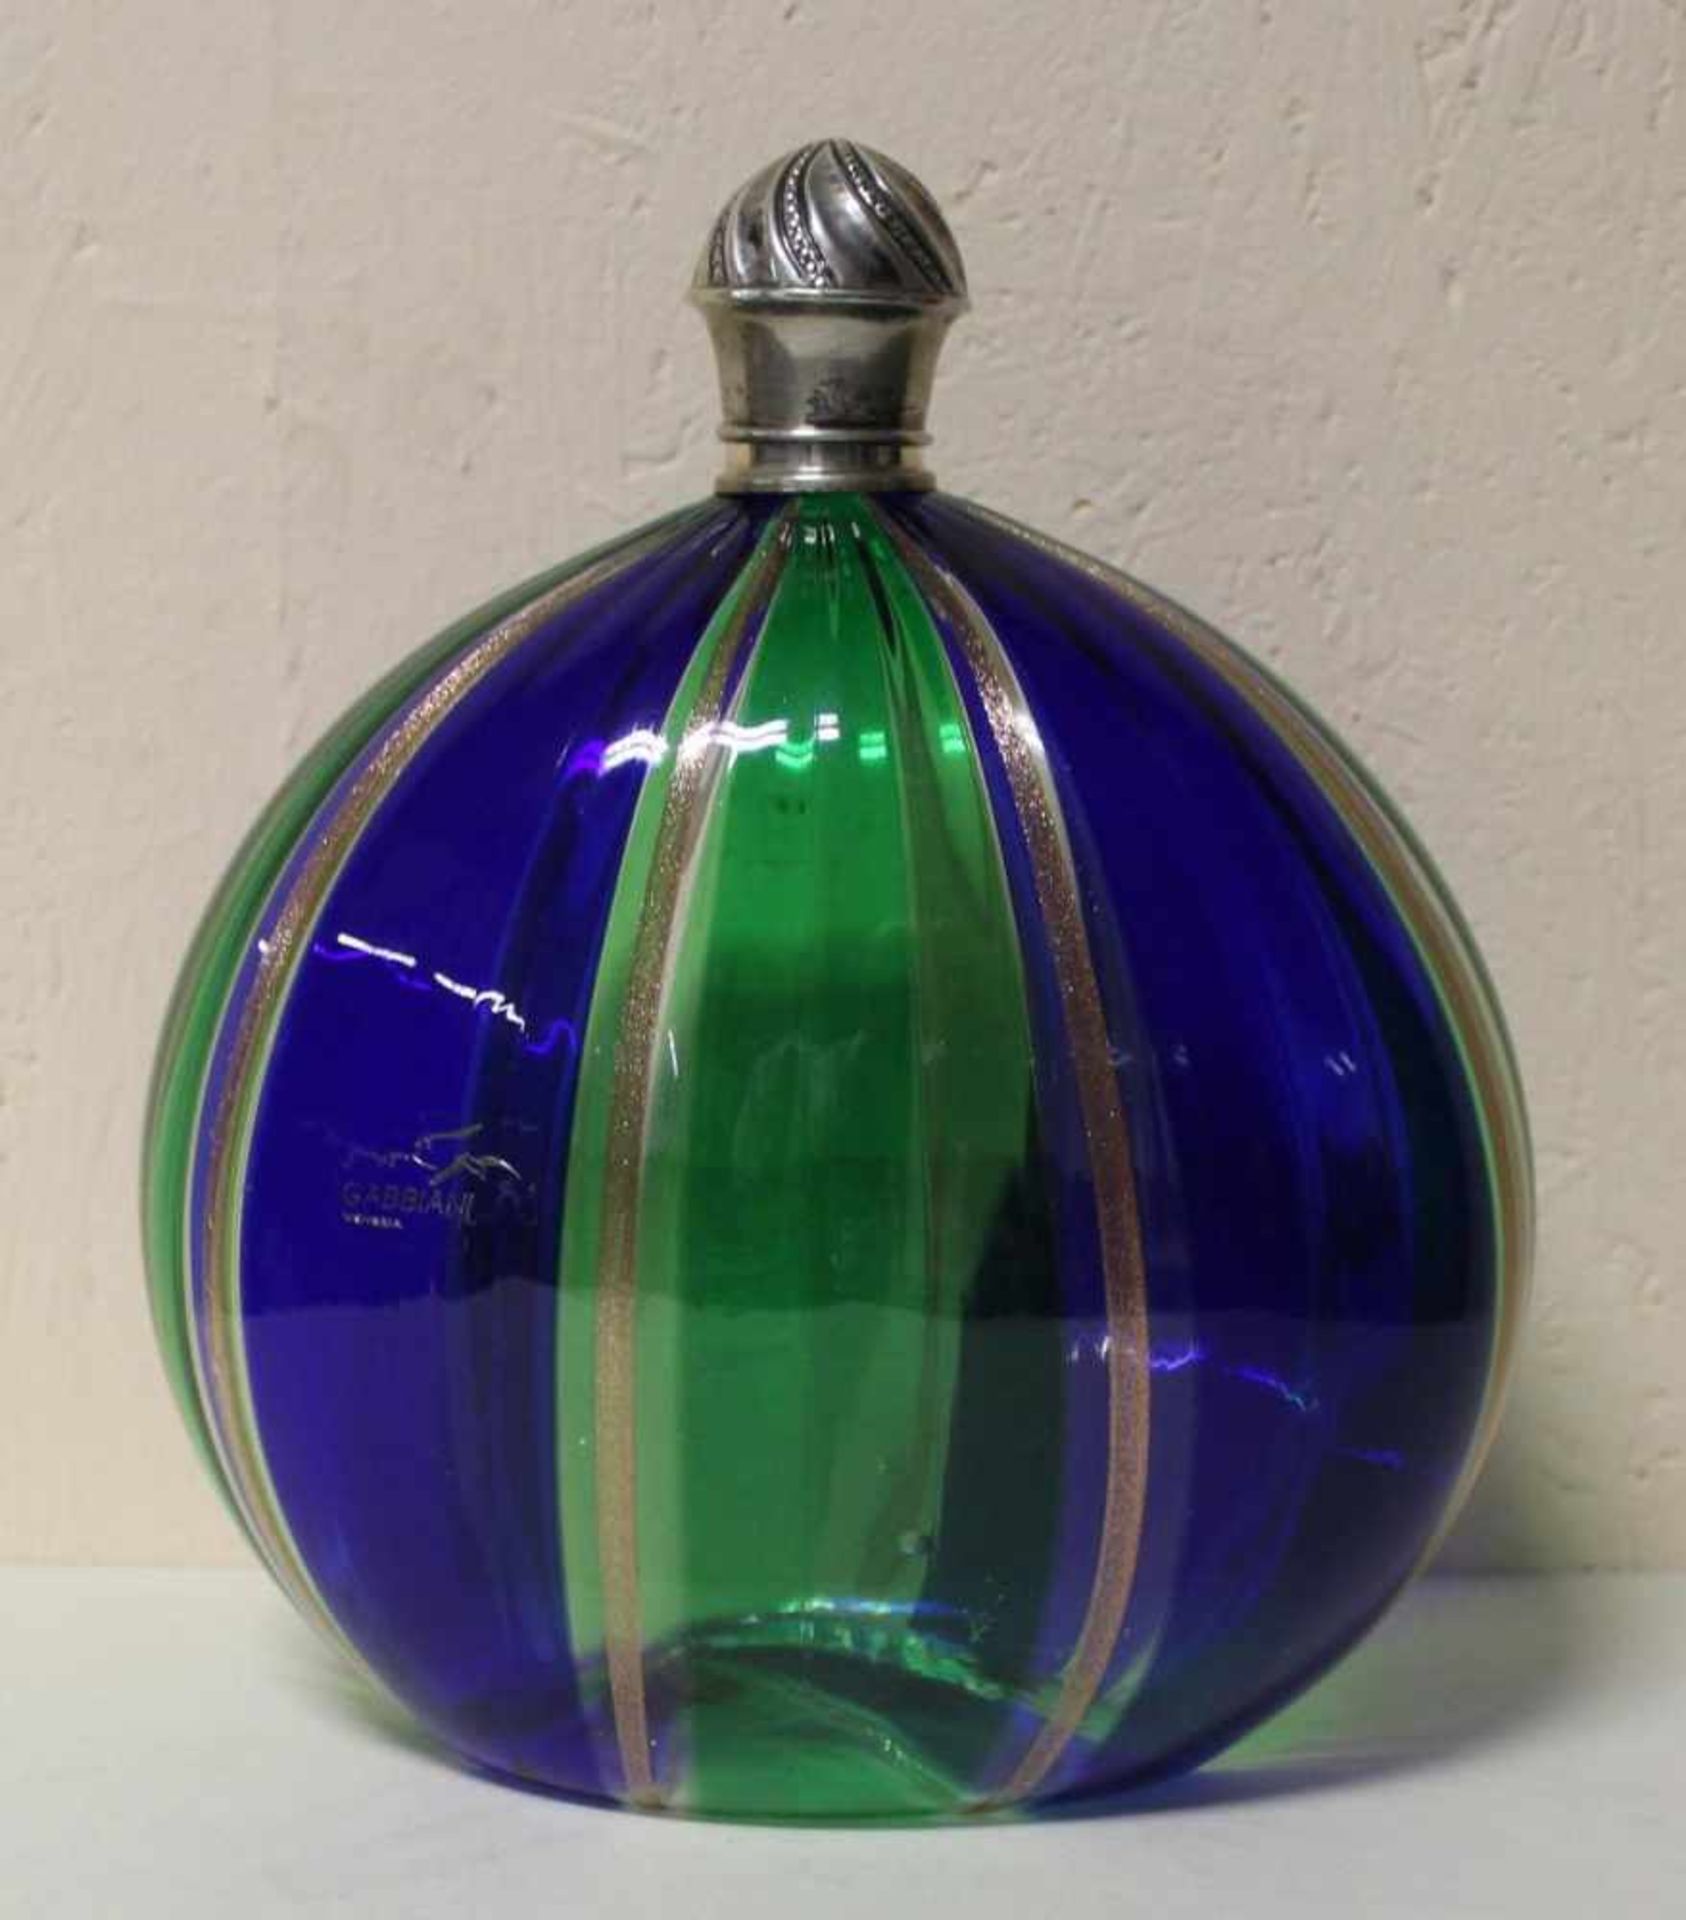 Parfümflakon GABBIANI Venezia, Muranoglas, Italien 2. Hälfte 20. Jh., mehrfarbiges Muranoglas mit